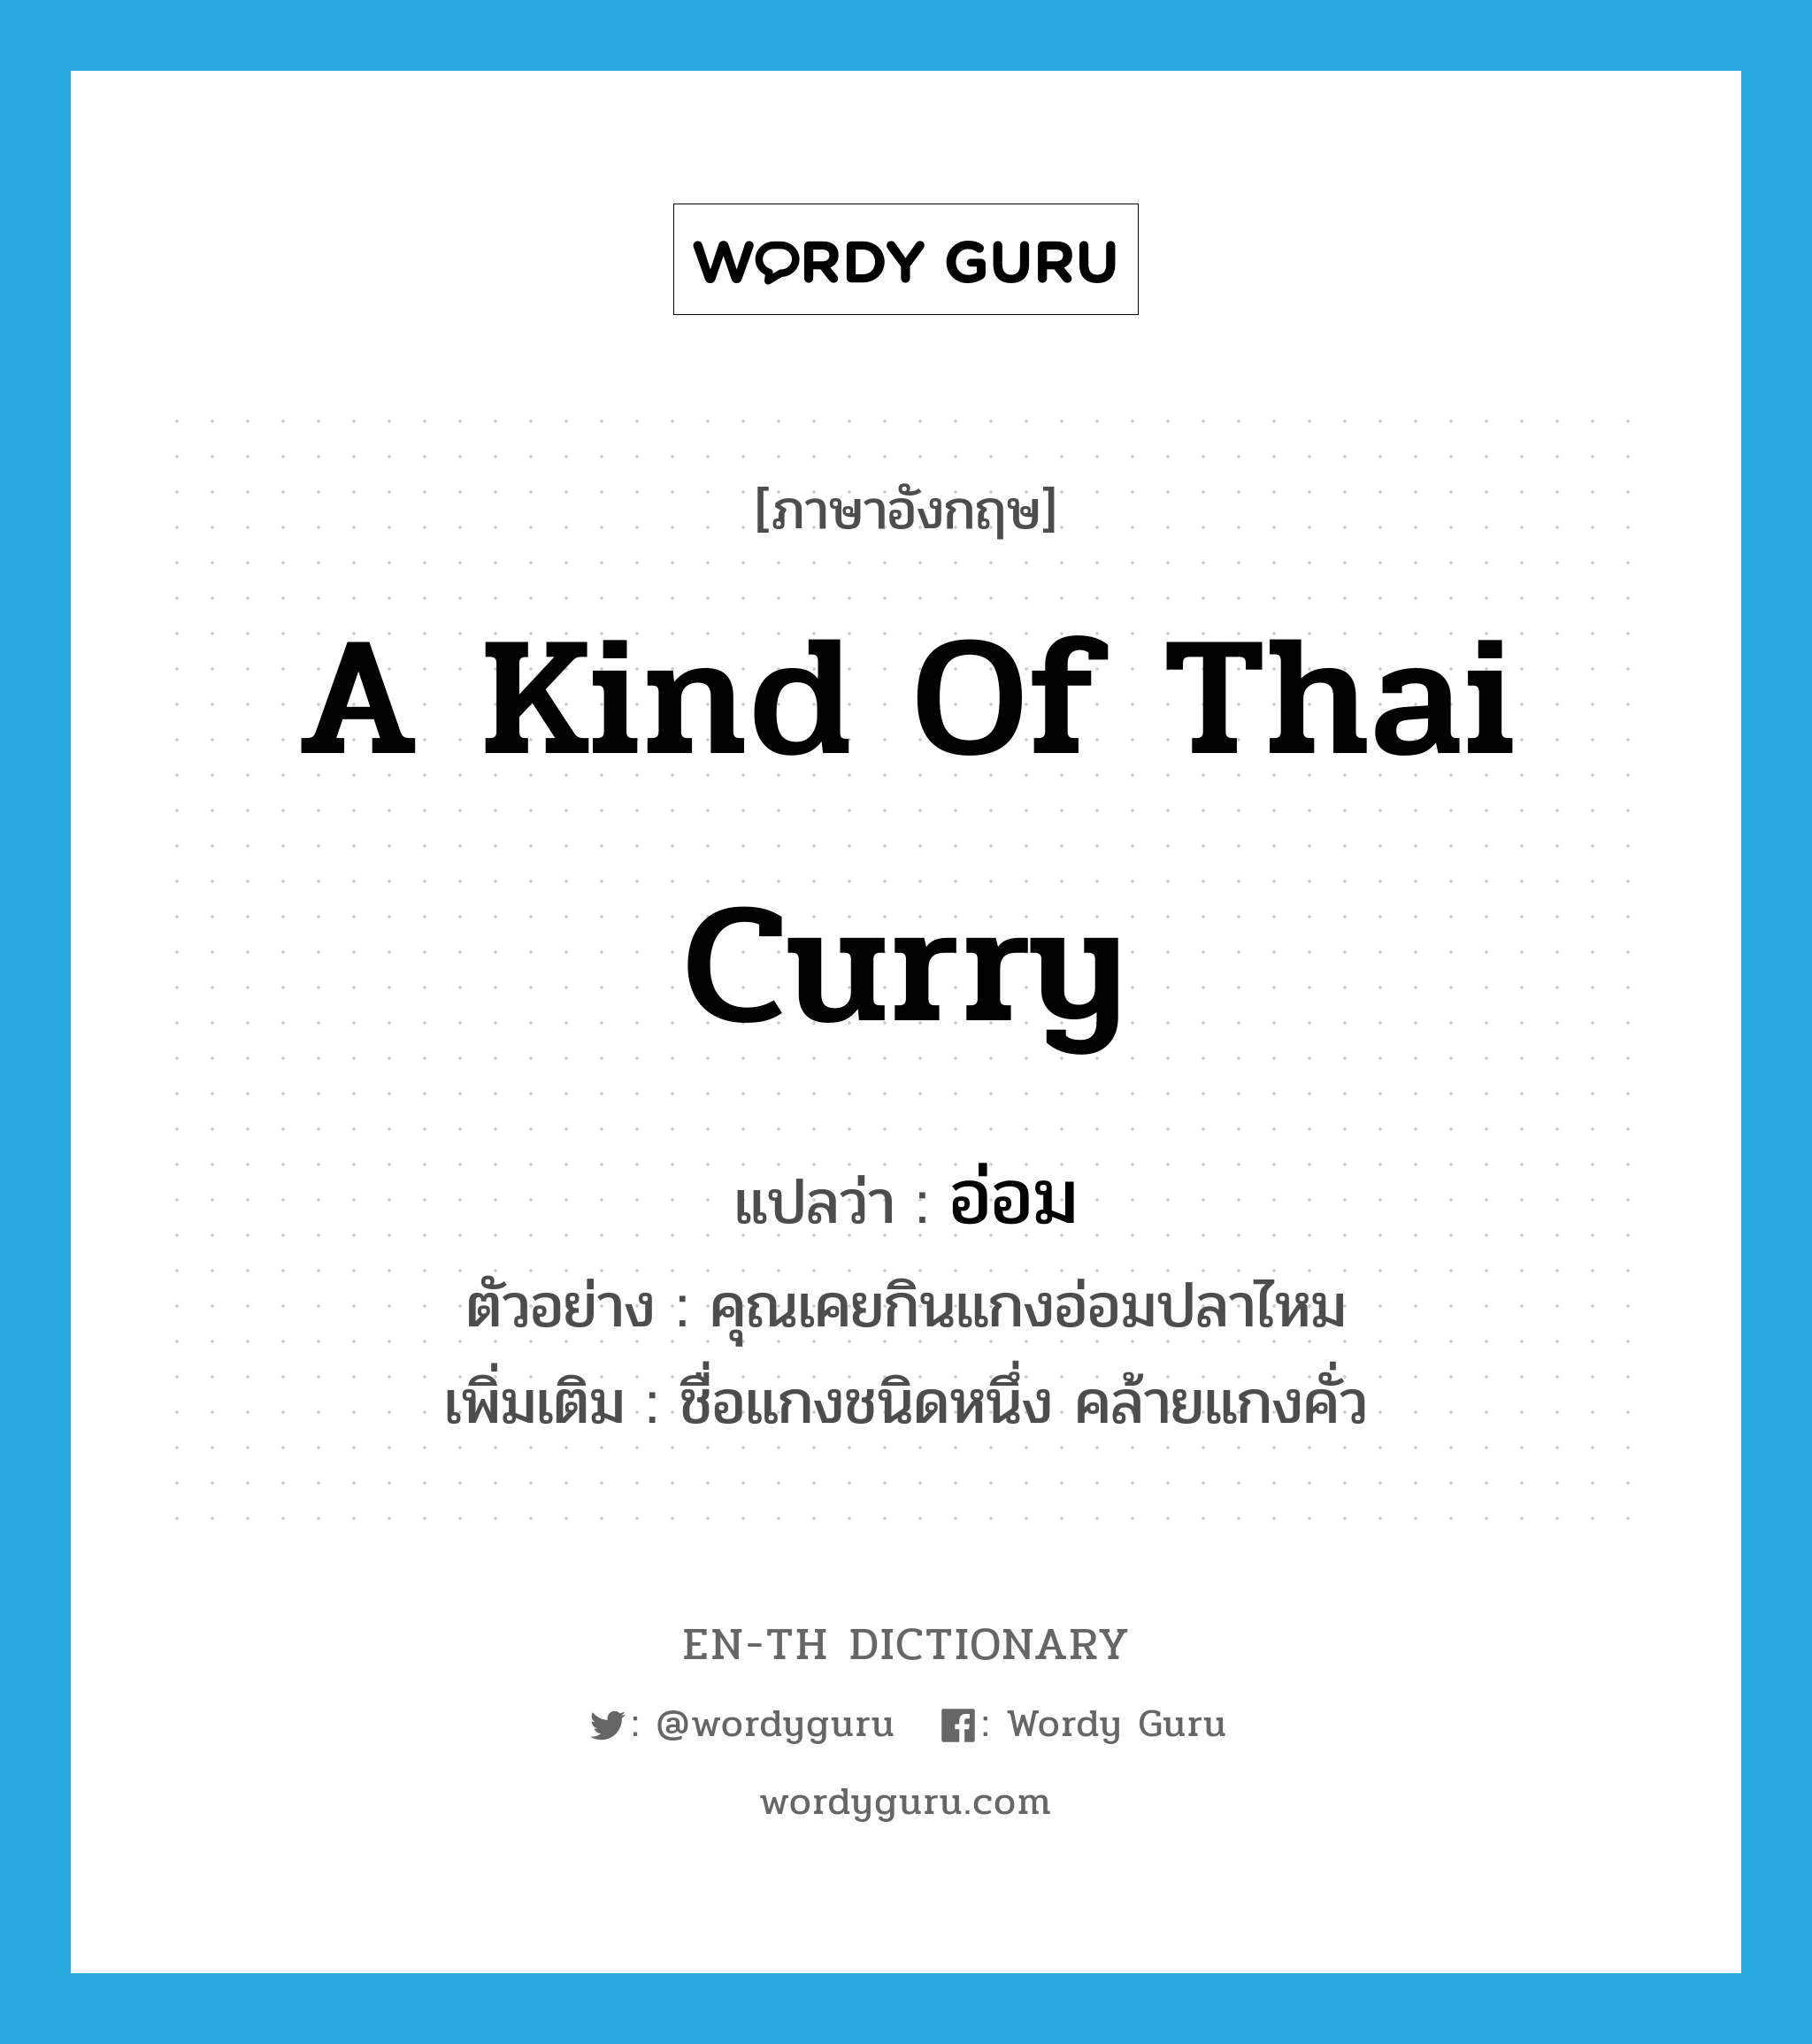 a kind of Thai curry แปลว่า?, คำศัพท์ภาษาอังกฤษ a kind of Thai curry แปลว่า อ่อม ประเภท N ตัวอย่าง คุณเคยกินแกงอ่อมปลาไหม เพิ่มเติม ชื่อแกงชนิดหนึ่ง คล้ายแกงคั่ว หมวด N